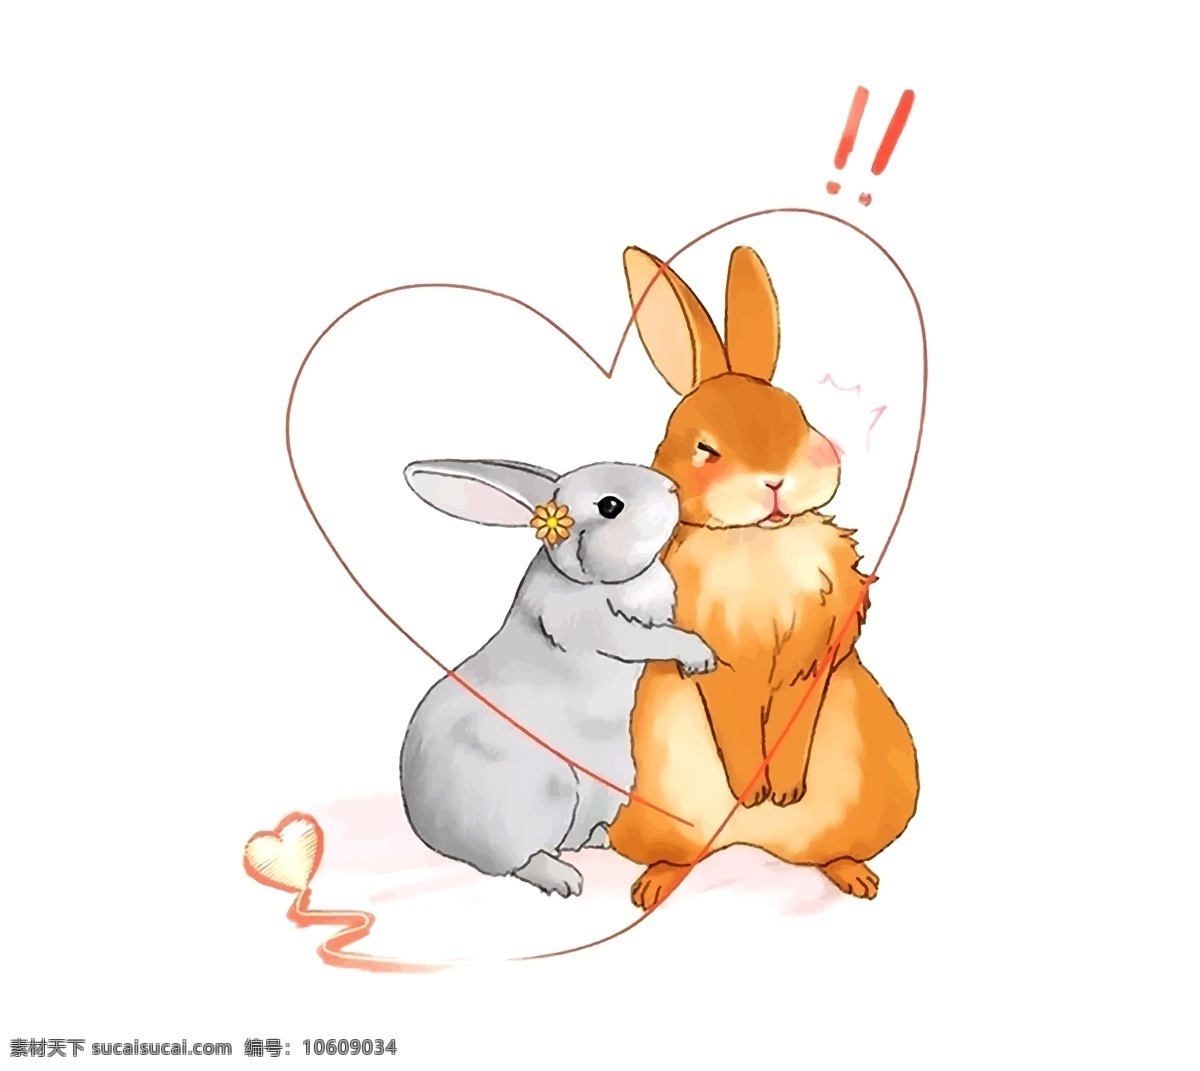 手绘 矢量 可爱 兔子 手绘兔子 矢量兔子 可爱兔子 爱心兔子 情侣矢量兔子 动漫动画 动漫人物